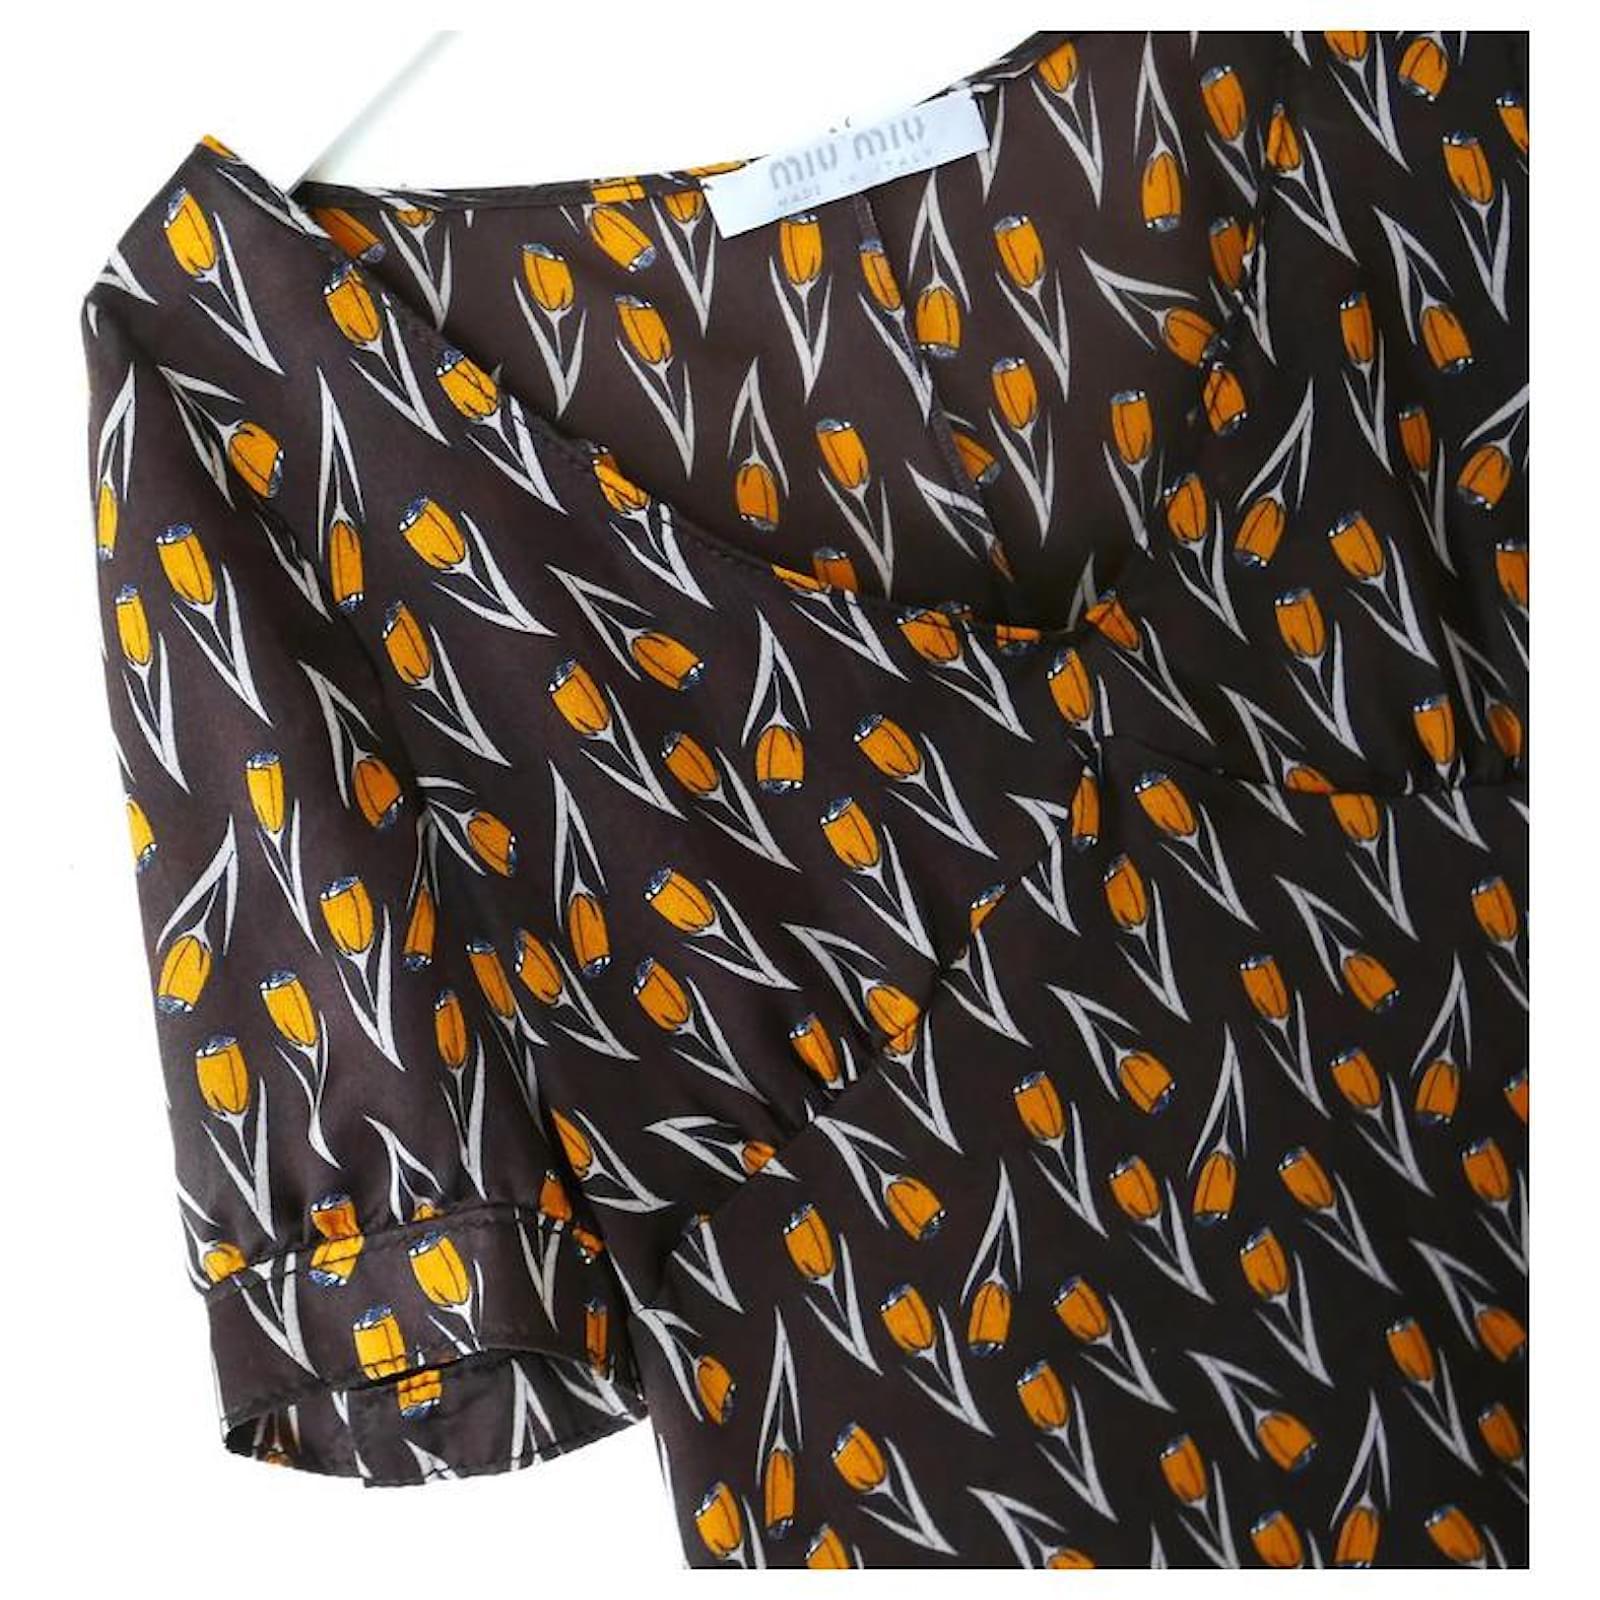 Super seltene, wunderschöne Miu Miu Vintage-Bluse aus der Fall 2000 Collection'S. I hervorragender Vintage-Zustand. Aus feinem, zartem braunem Crêpe de Chine aus Seide mit wunderschönem orangefarbenem Blumendruck. 
Es hat einen von den 1930er Jahren